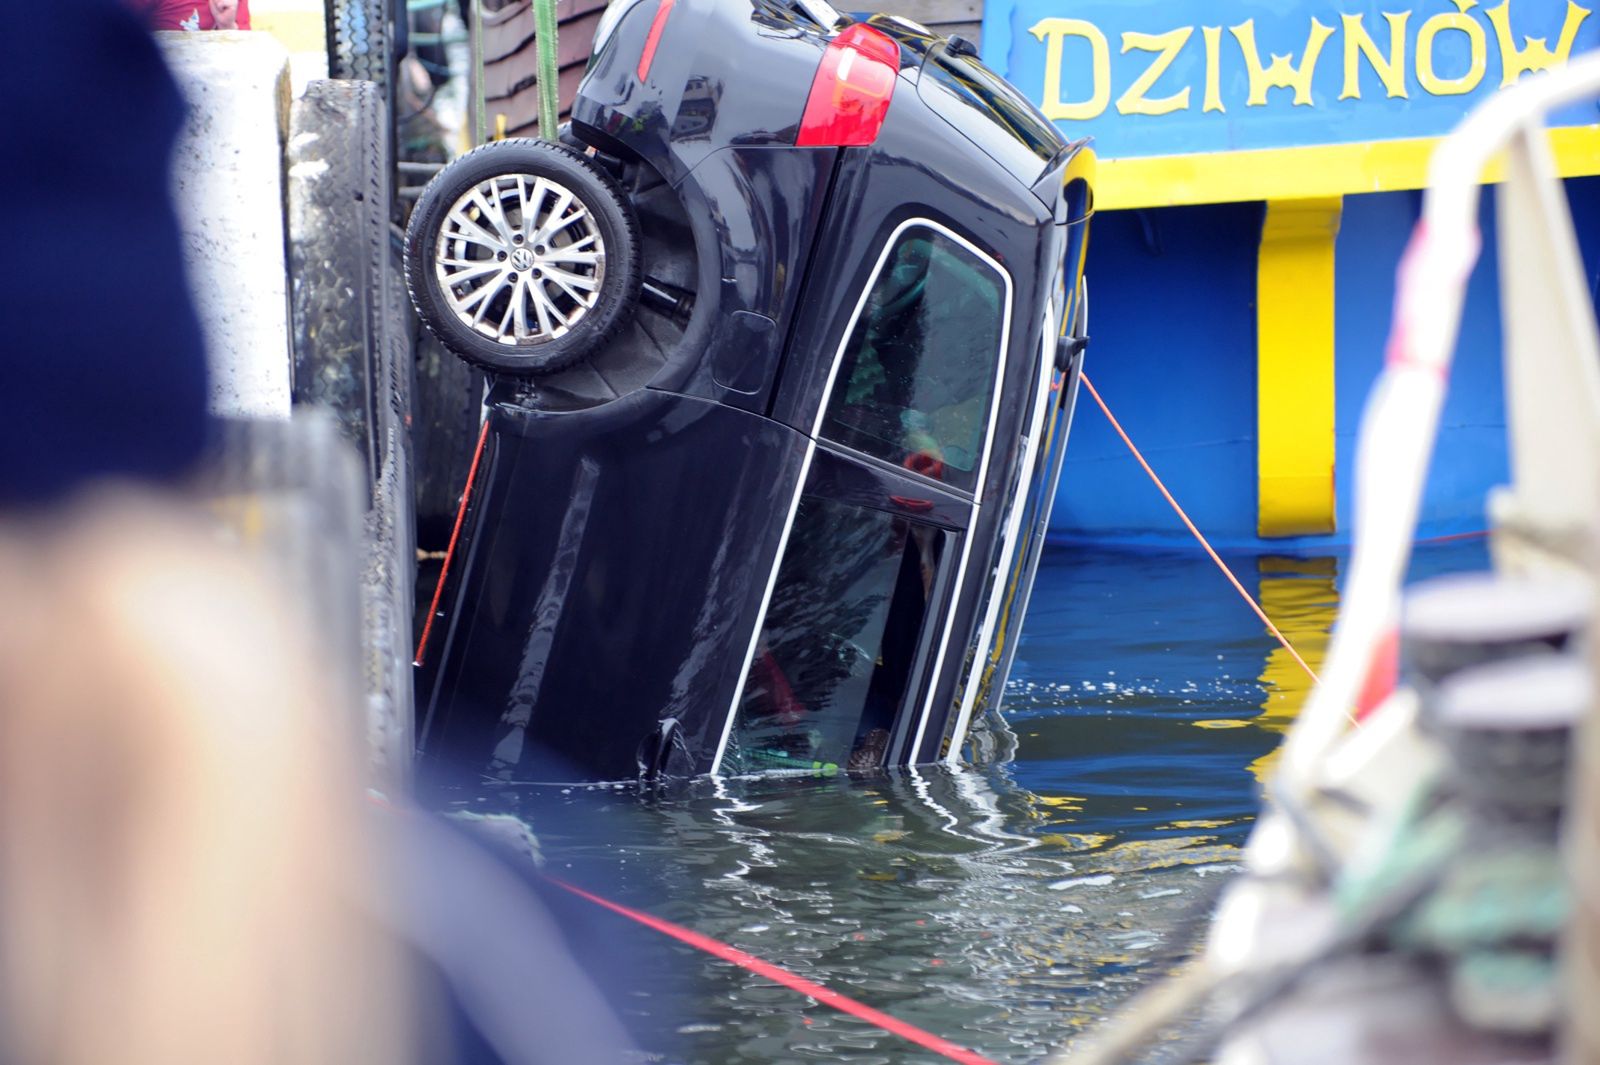 Straszliwy wypadek nad Bałtykiem. Auto w wodzie. Nie żyją rodzice i dzieci